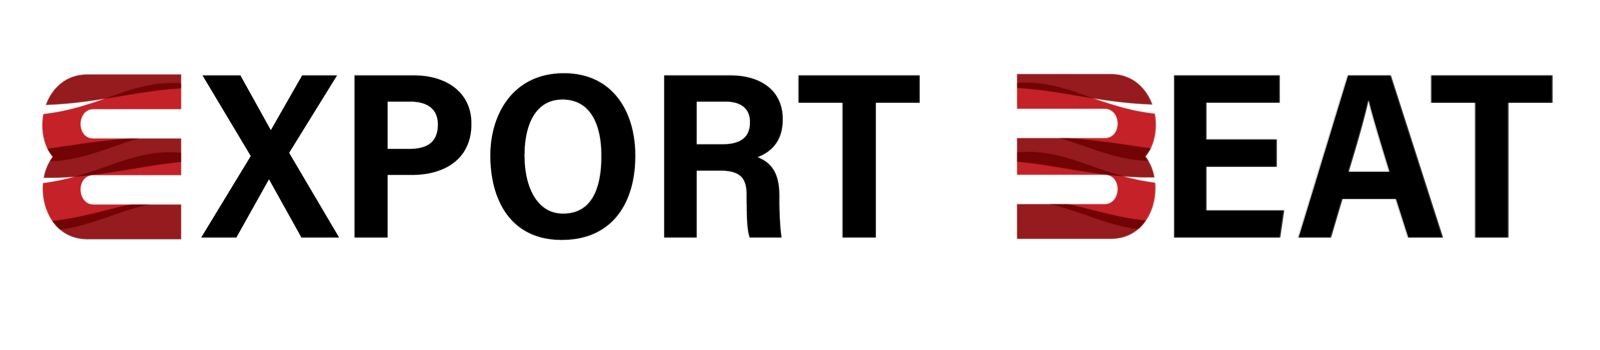 Export Depot